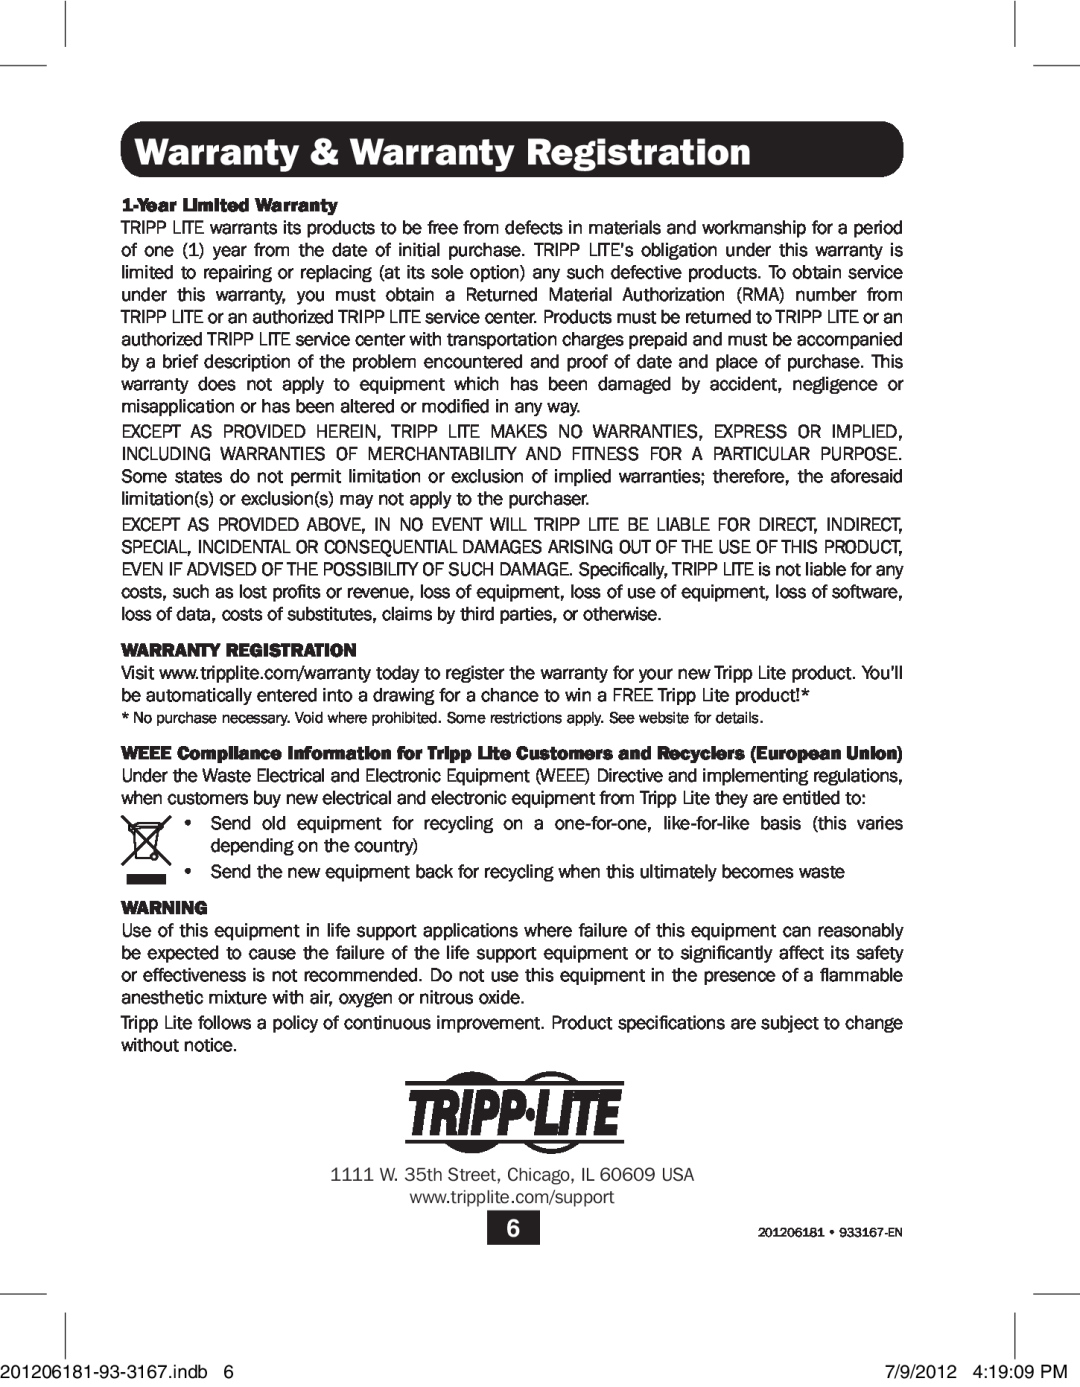 Tripp Lite B203-104 owner manual Warranty & Warranty Registration, Year Limited Warranty 